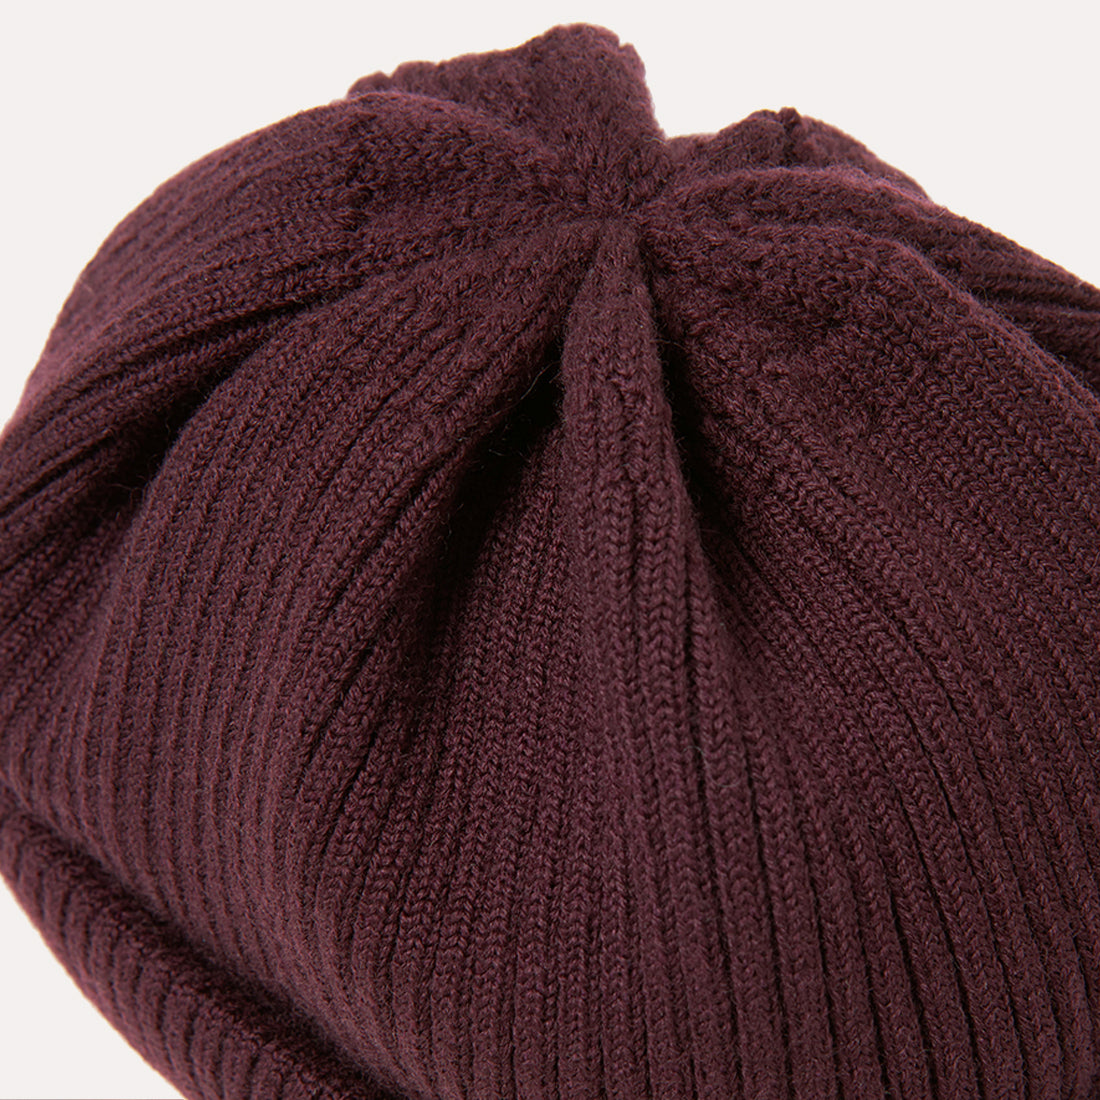 Wool beanie